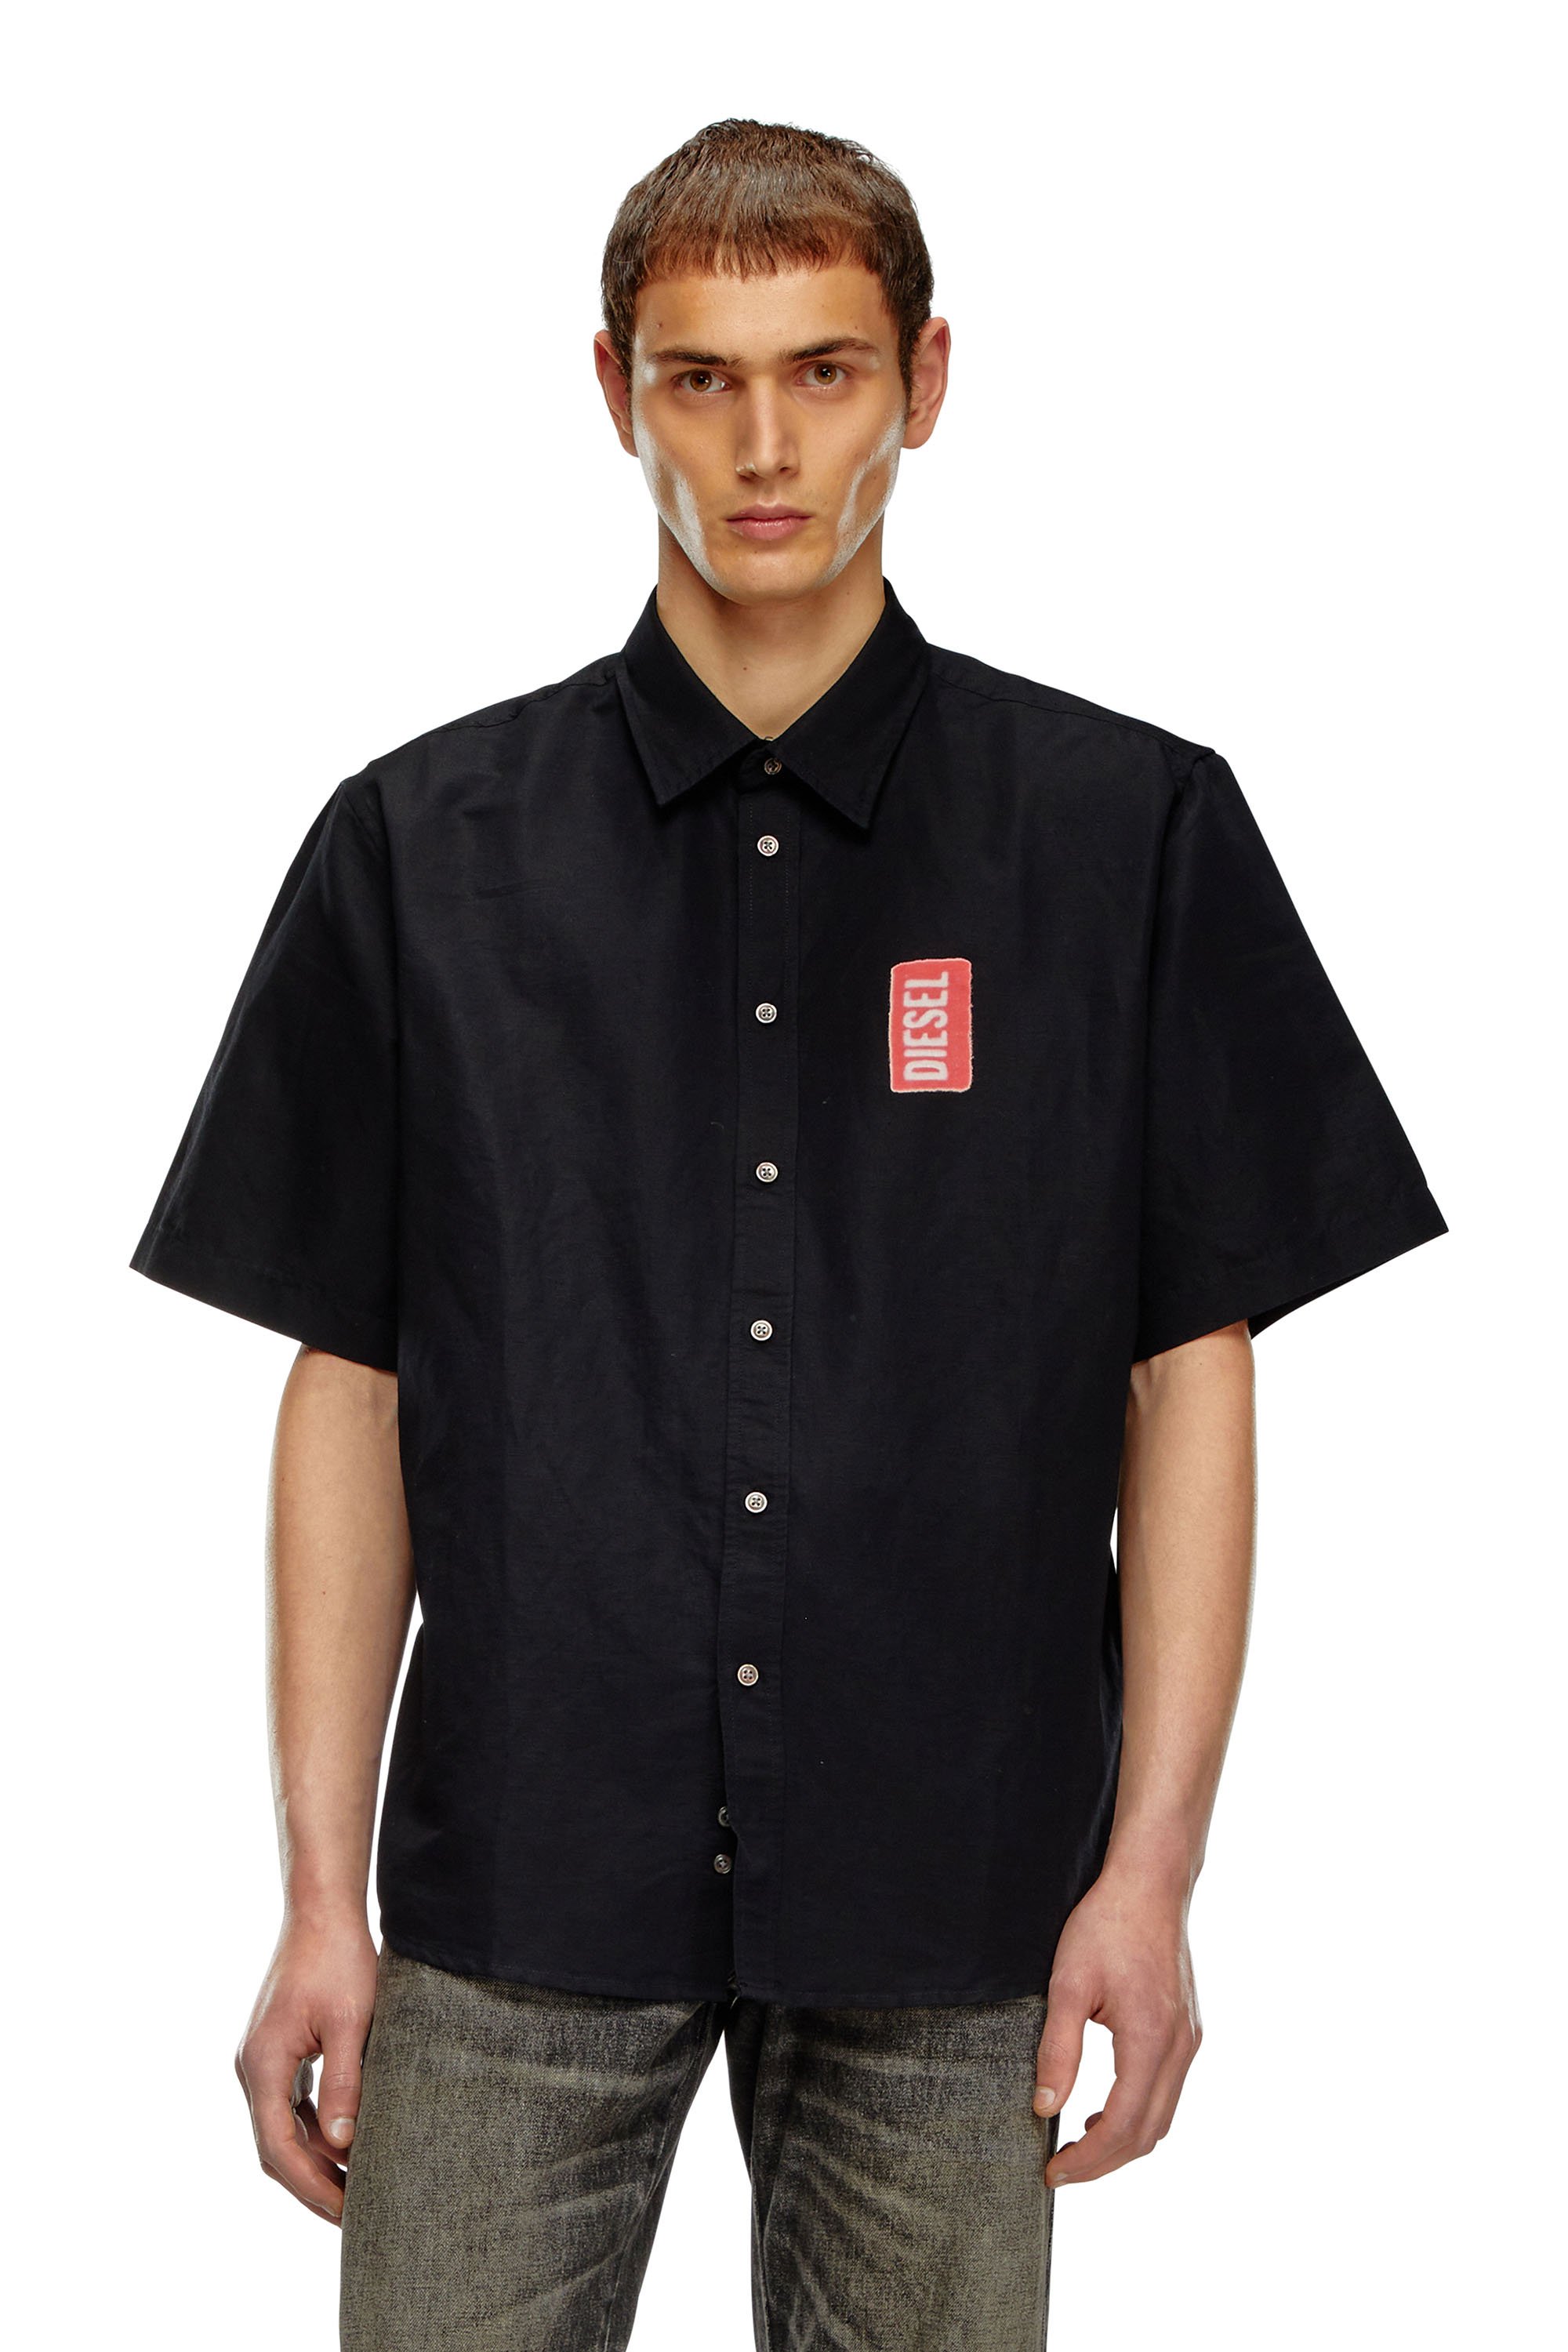 Diesel - Kurzarm-Shirt aus Leinenmischgewebe mit Print - Hemden - Herren - Schwarz